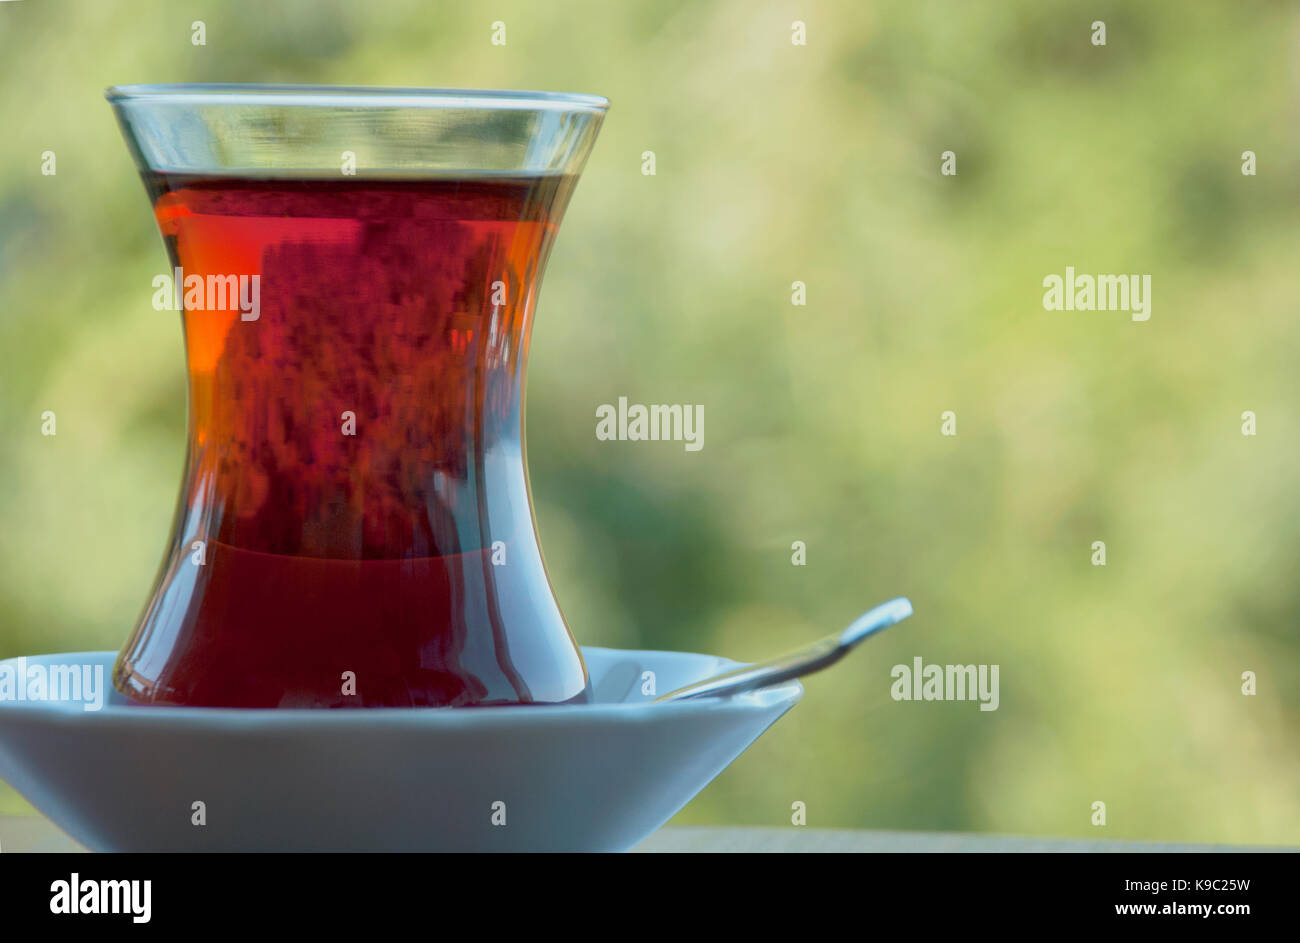 Turkish tea Stock Photo